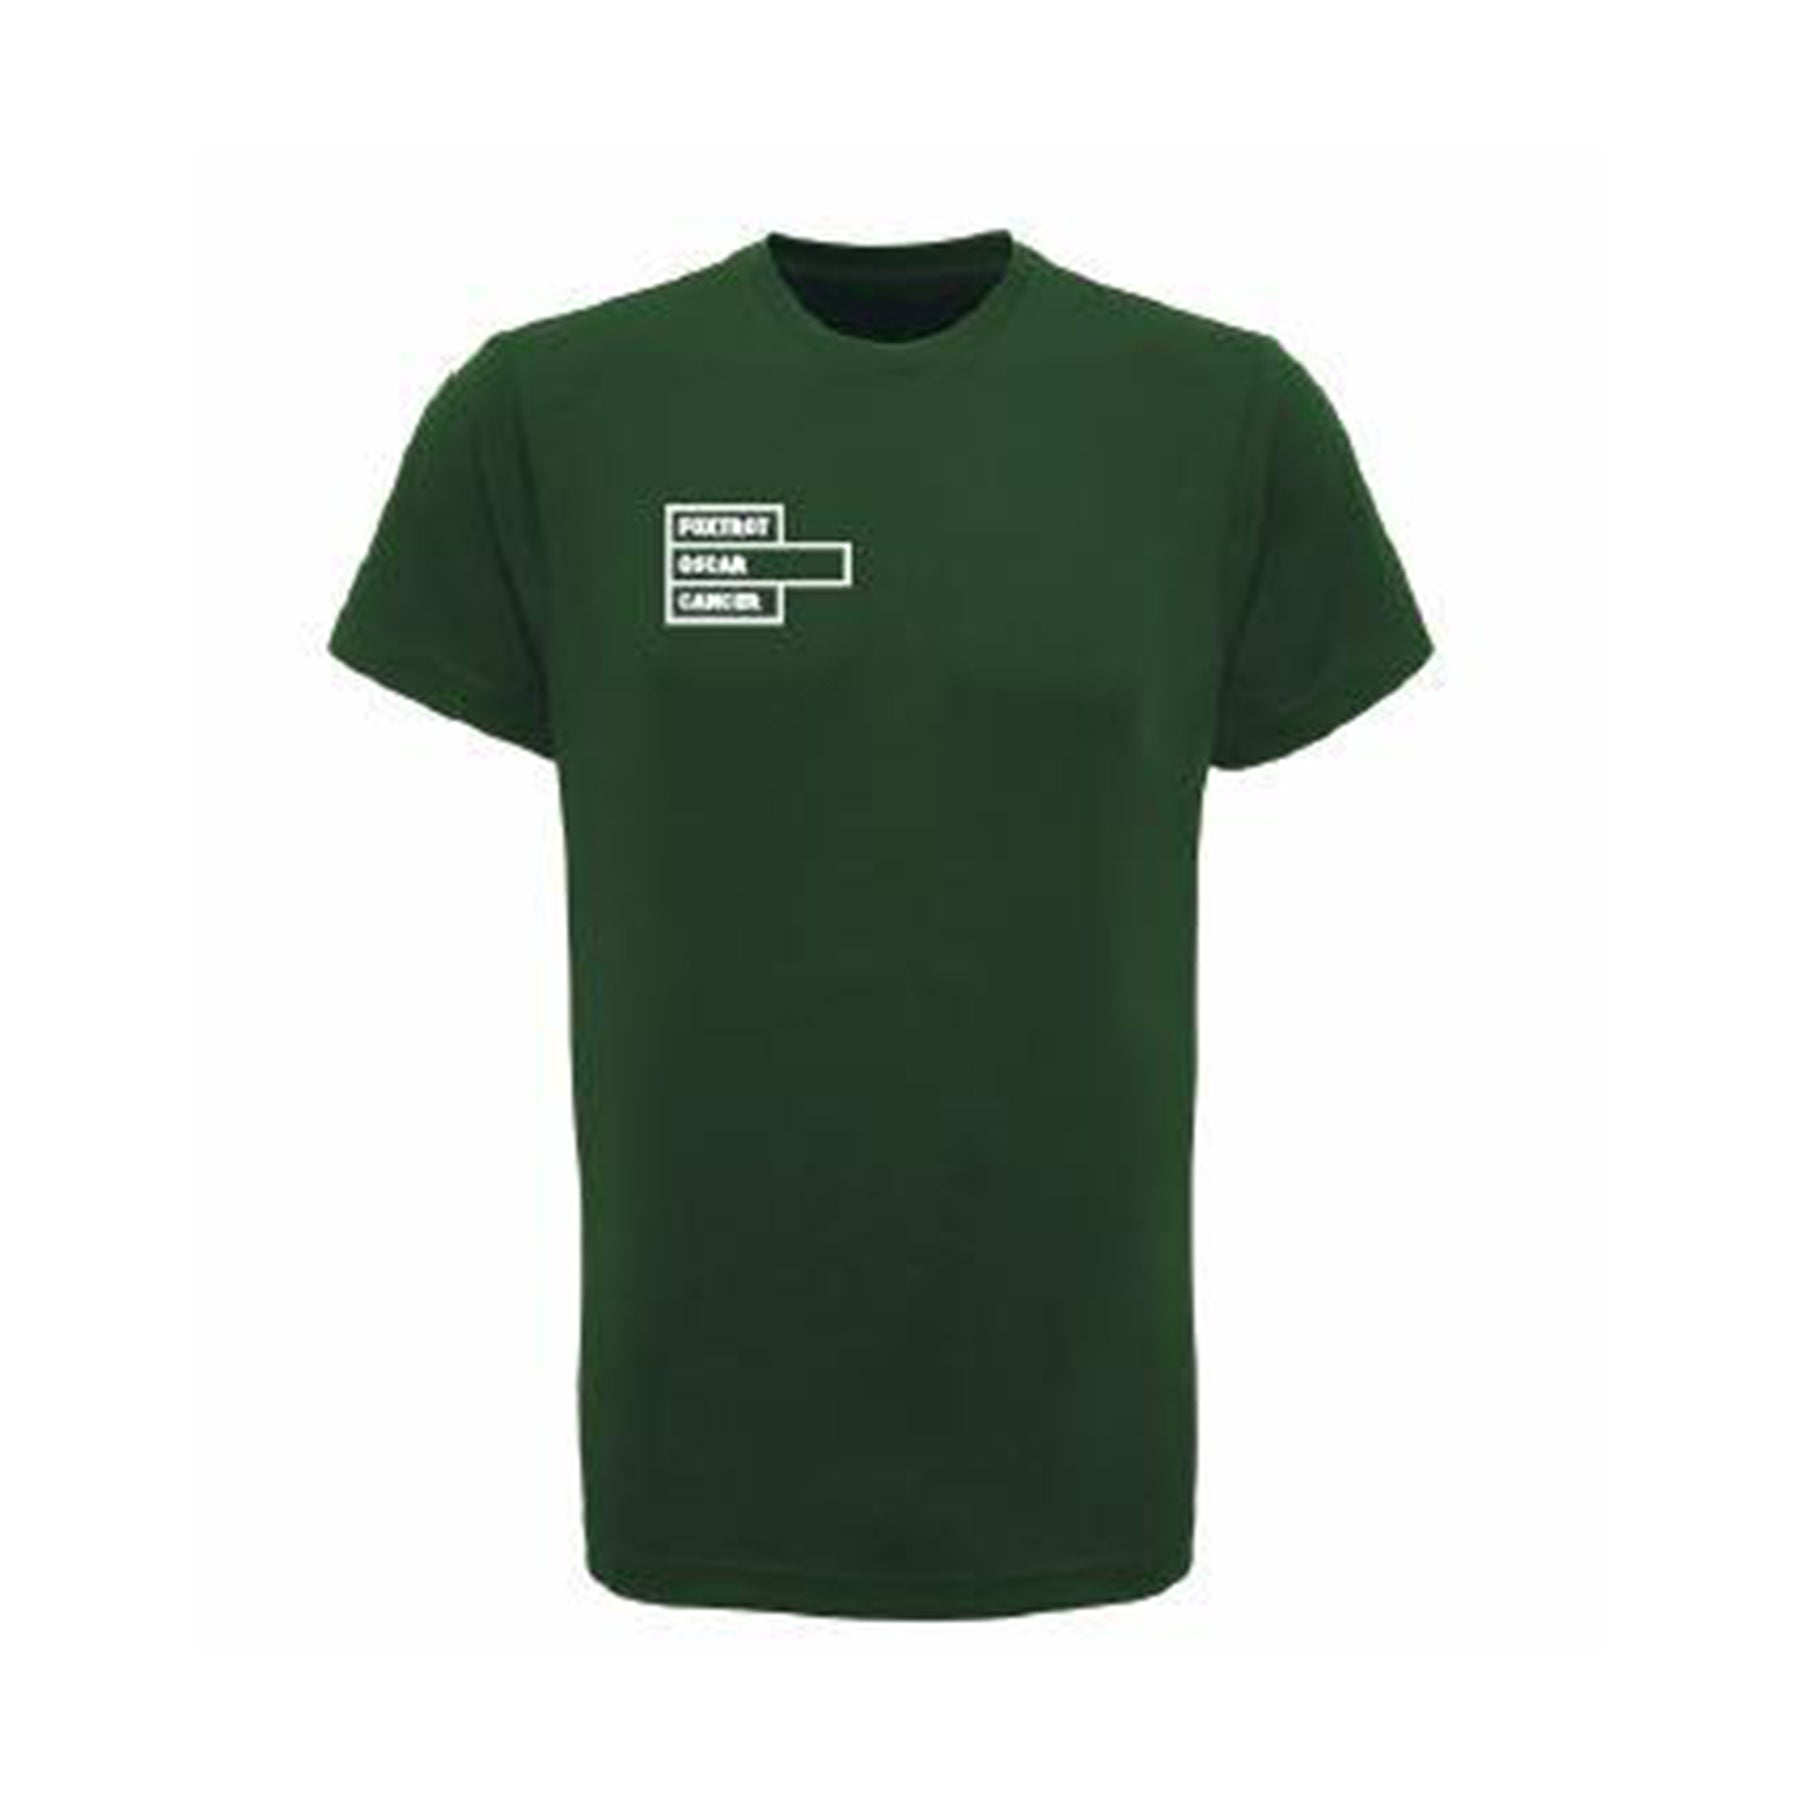 Foxtrot Oscar Gym T-Shirt: Bottle Green